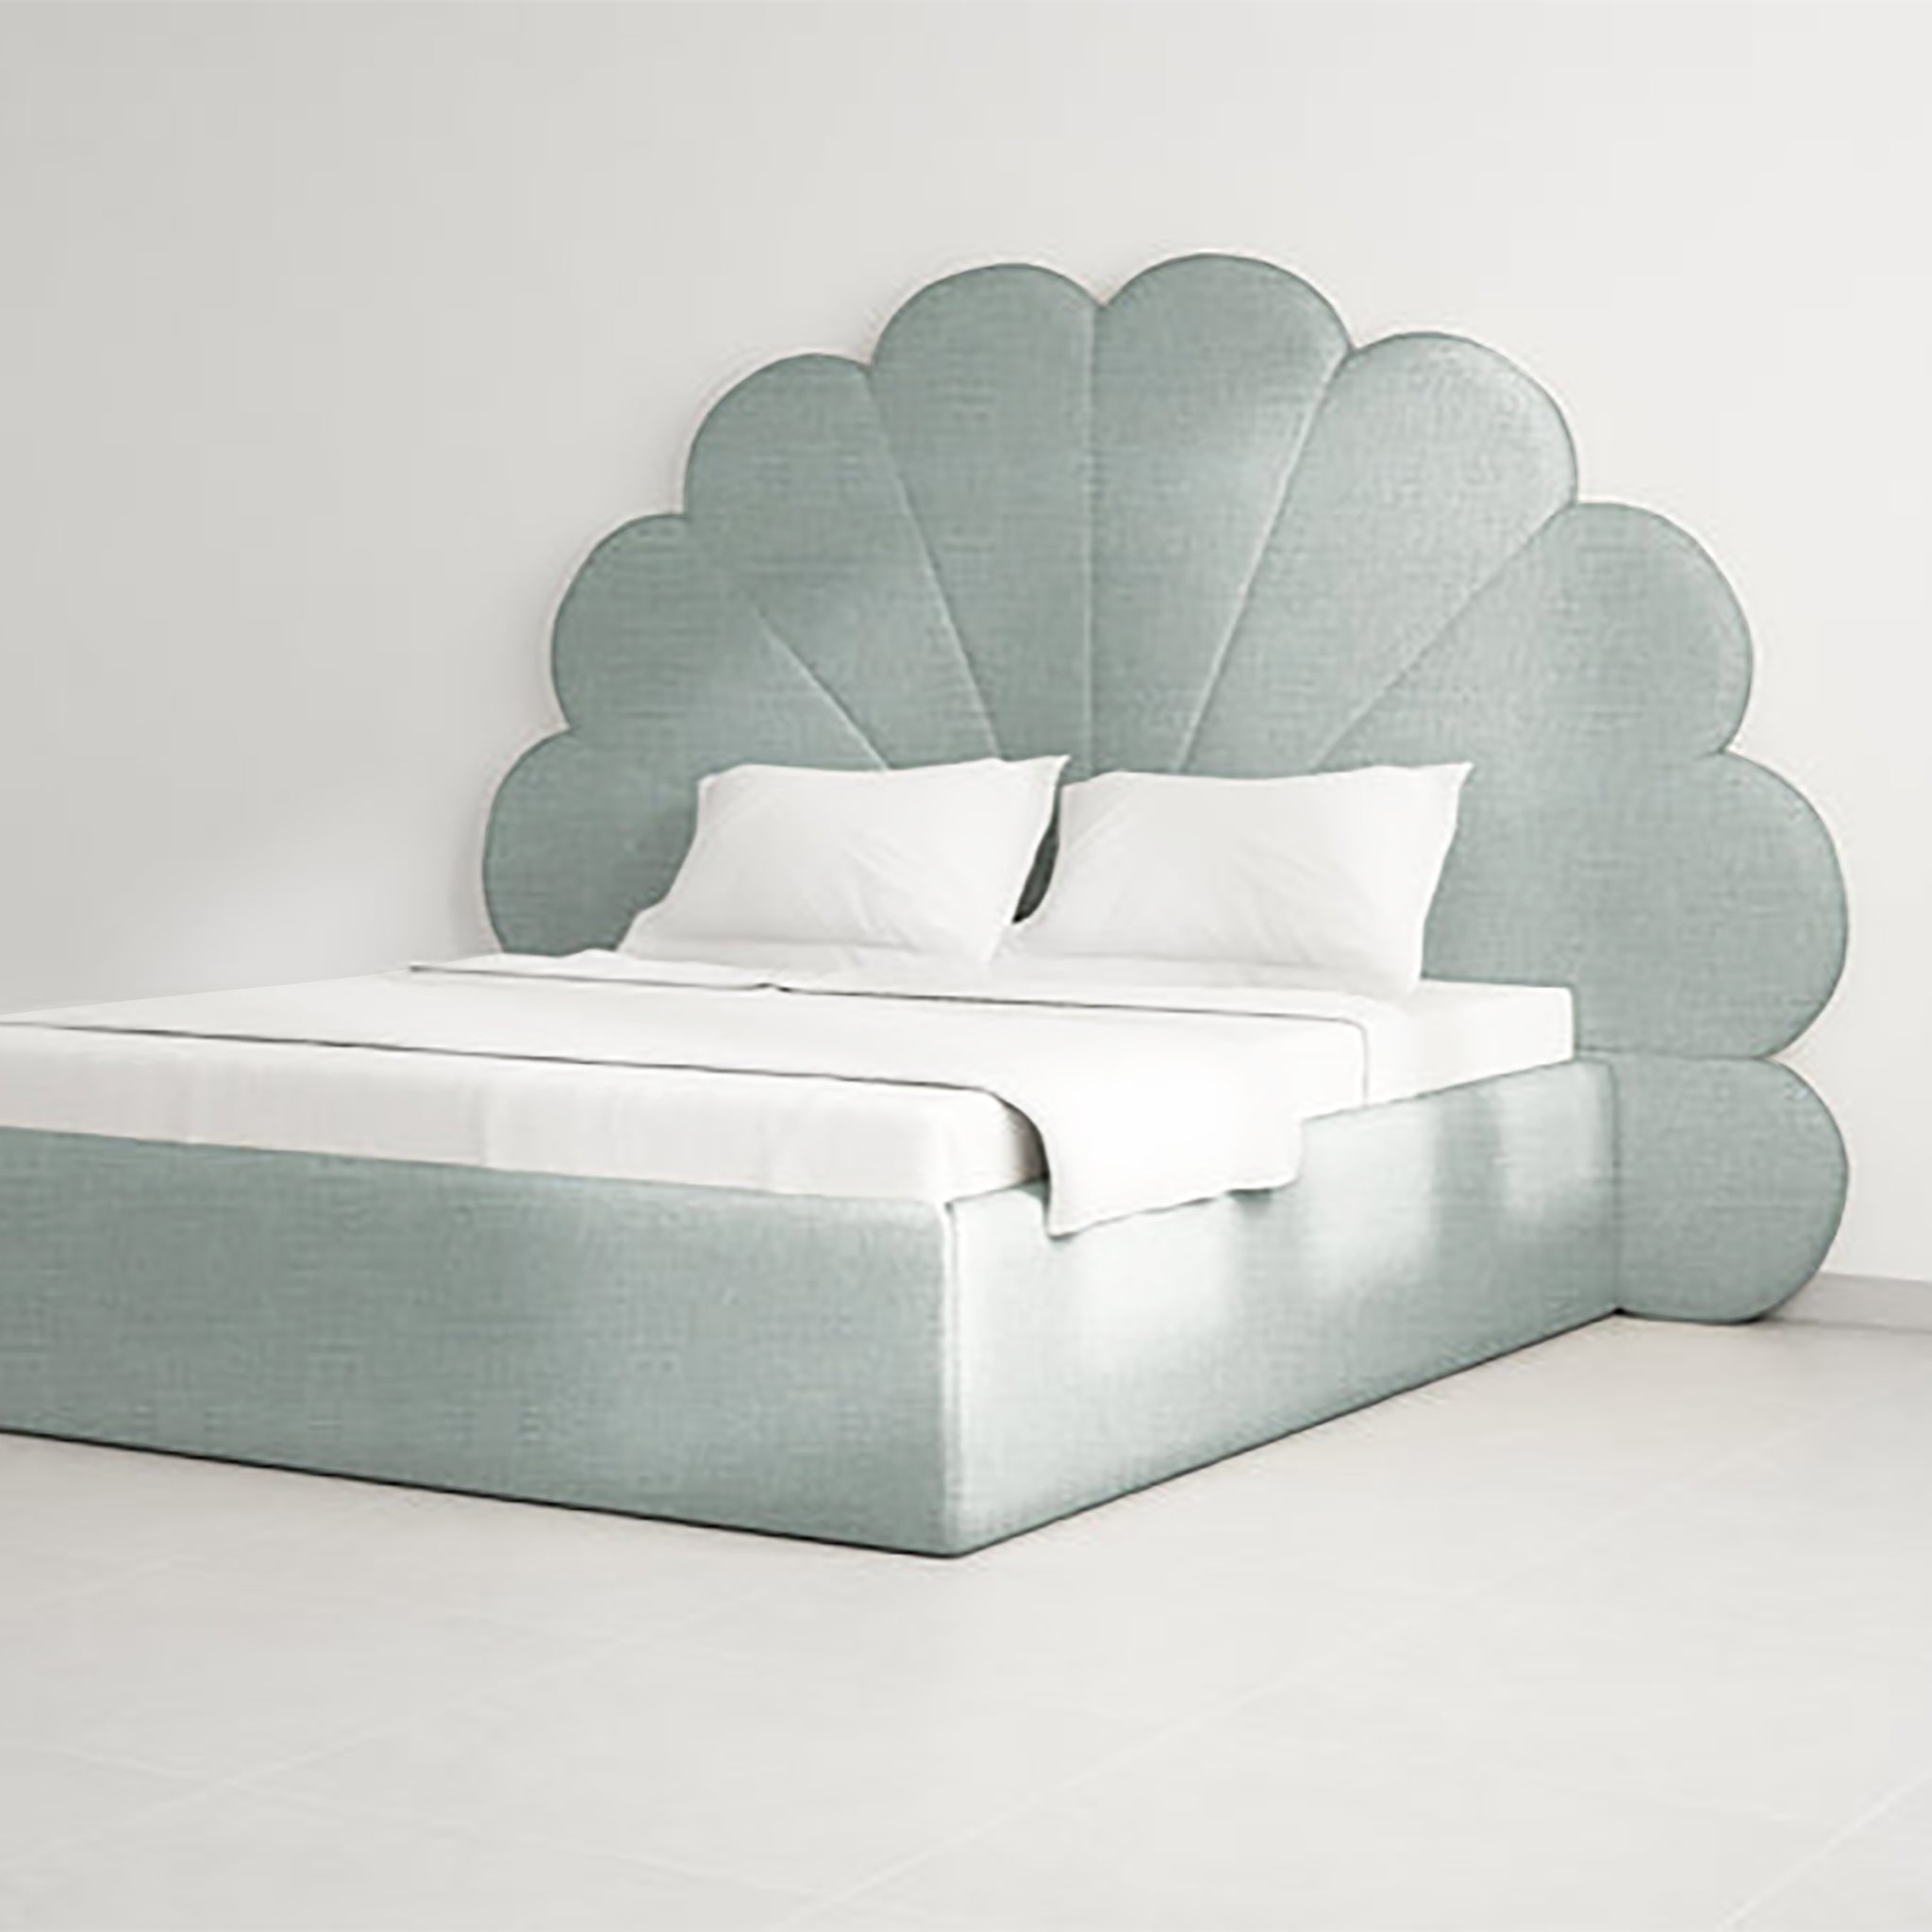 Premium velvet upholstered Kyle Bed in master bedroom